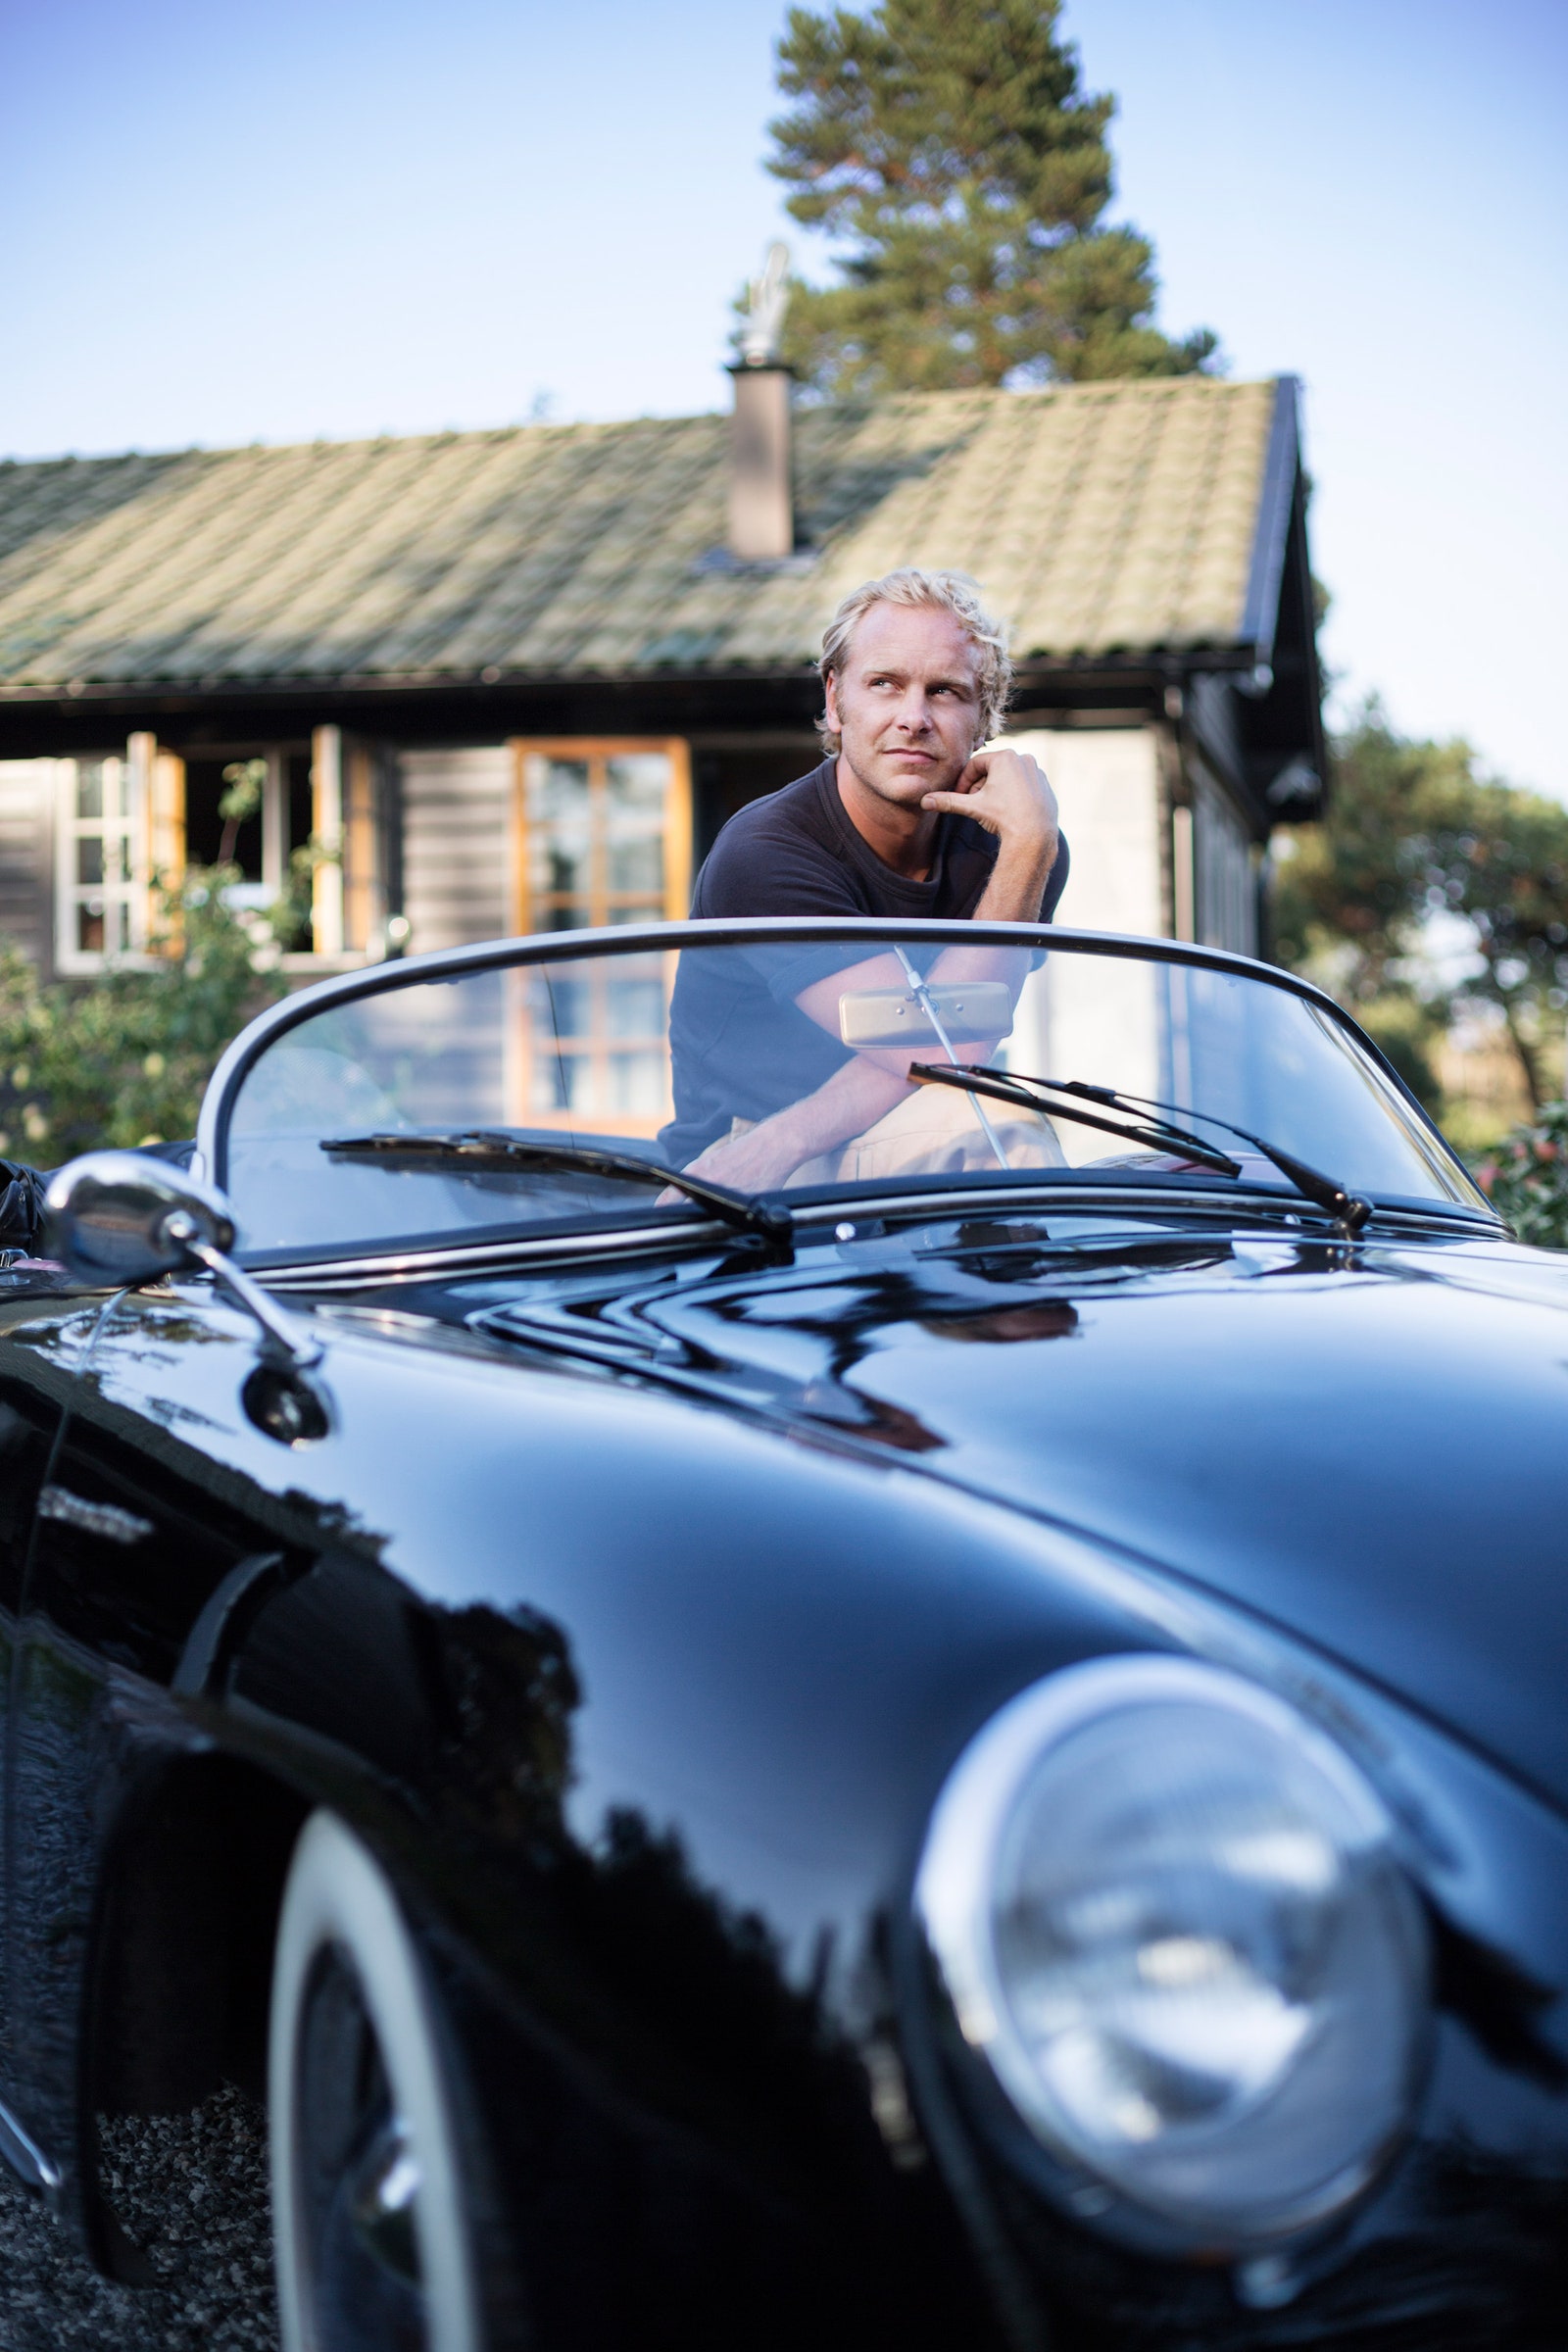 Фотограф Калле Густафссон напротив своего дома. Он водит Porsche Cabriolet 356 Hipster.